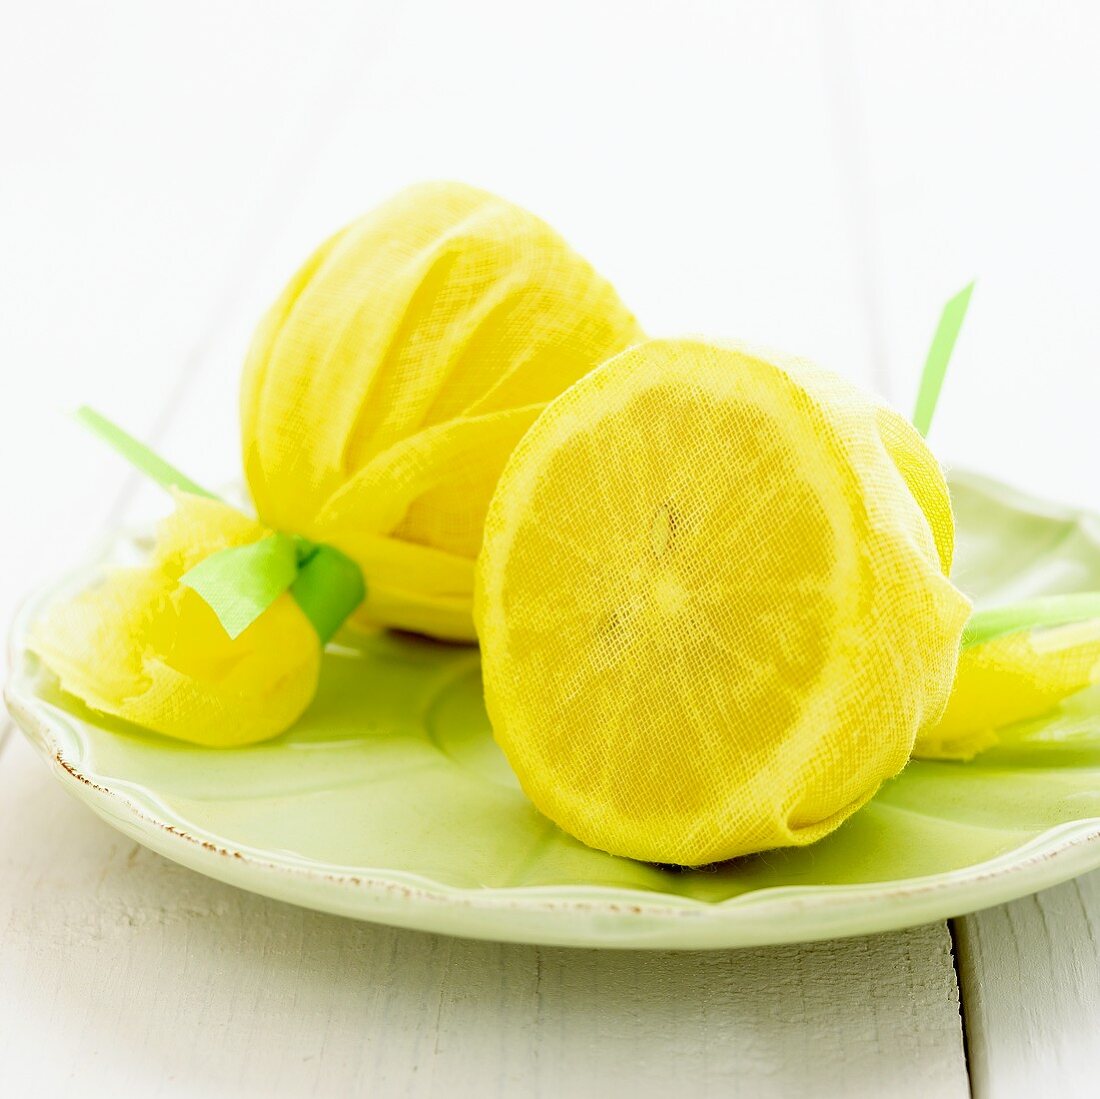 Two lemon halves wrapped in muslin